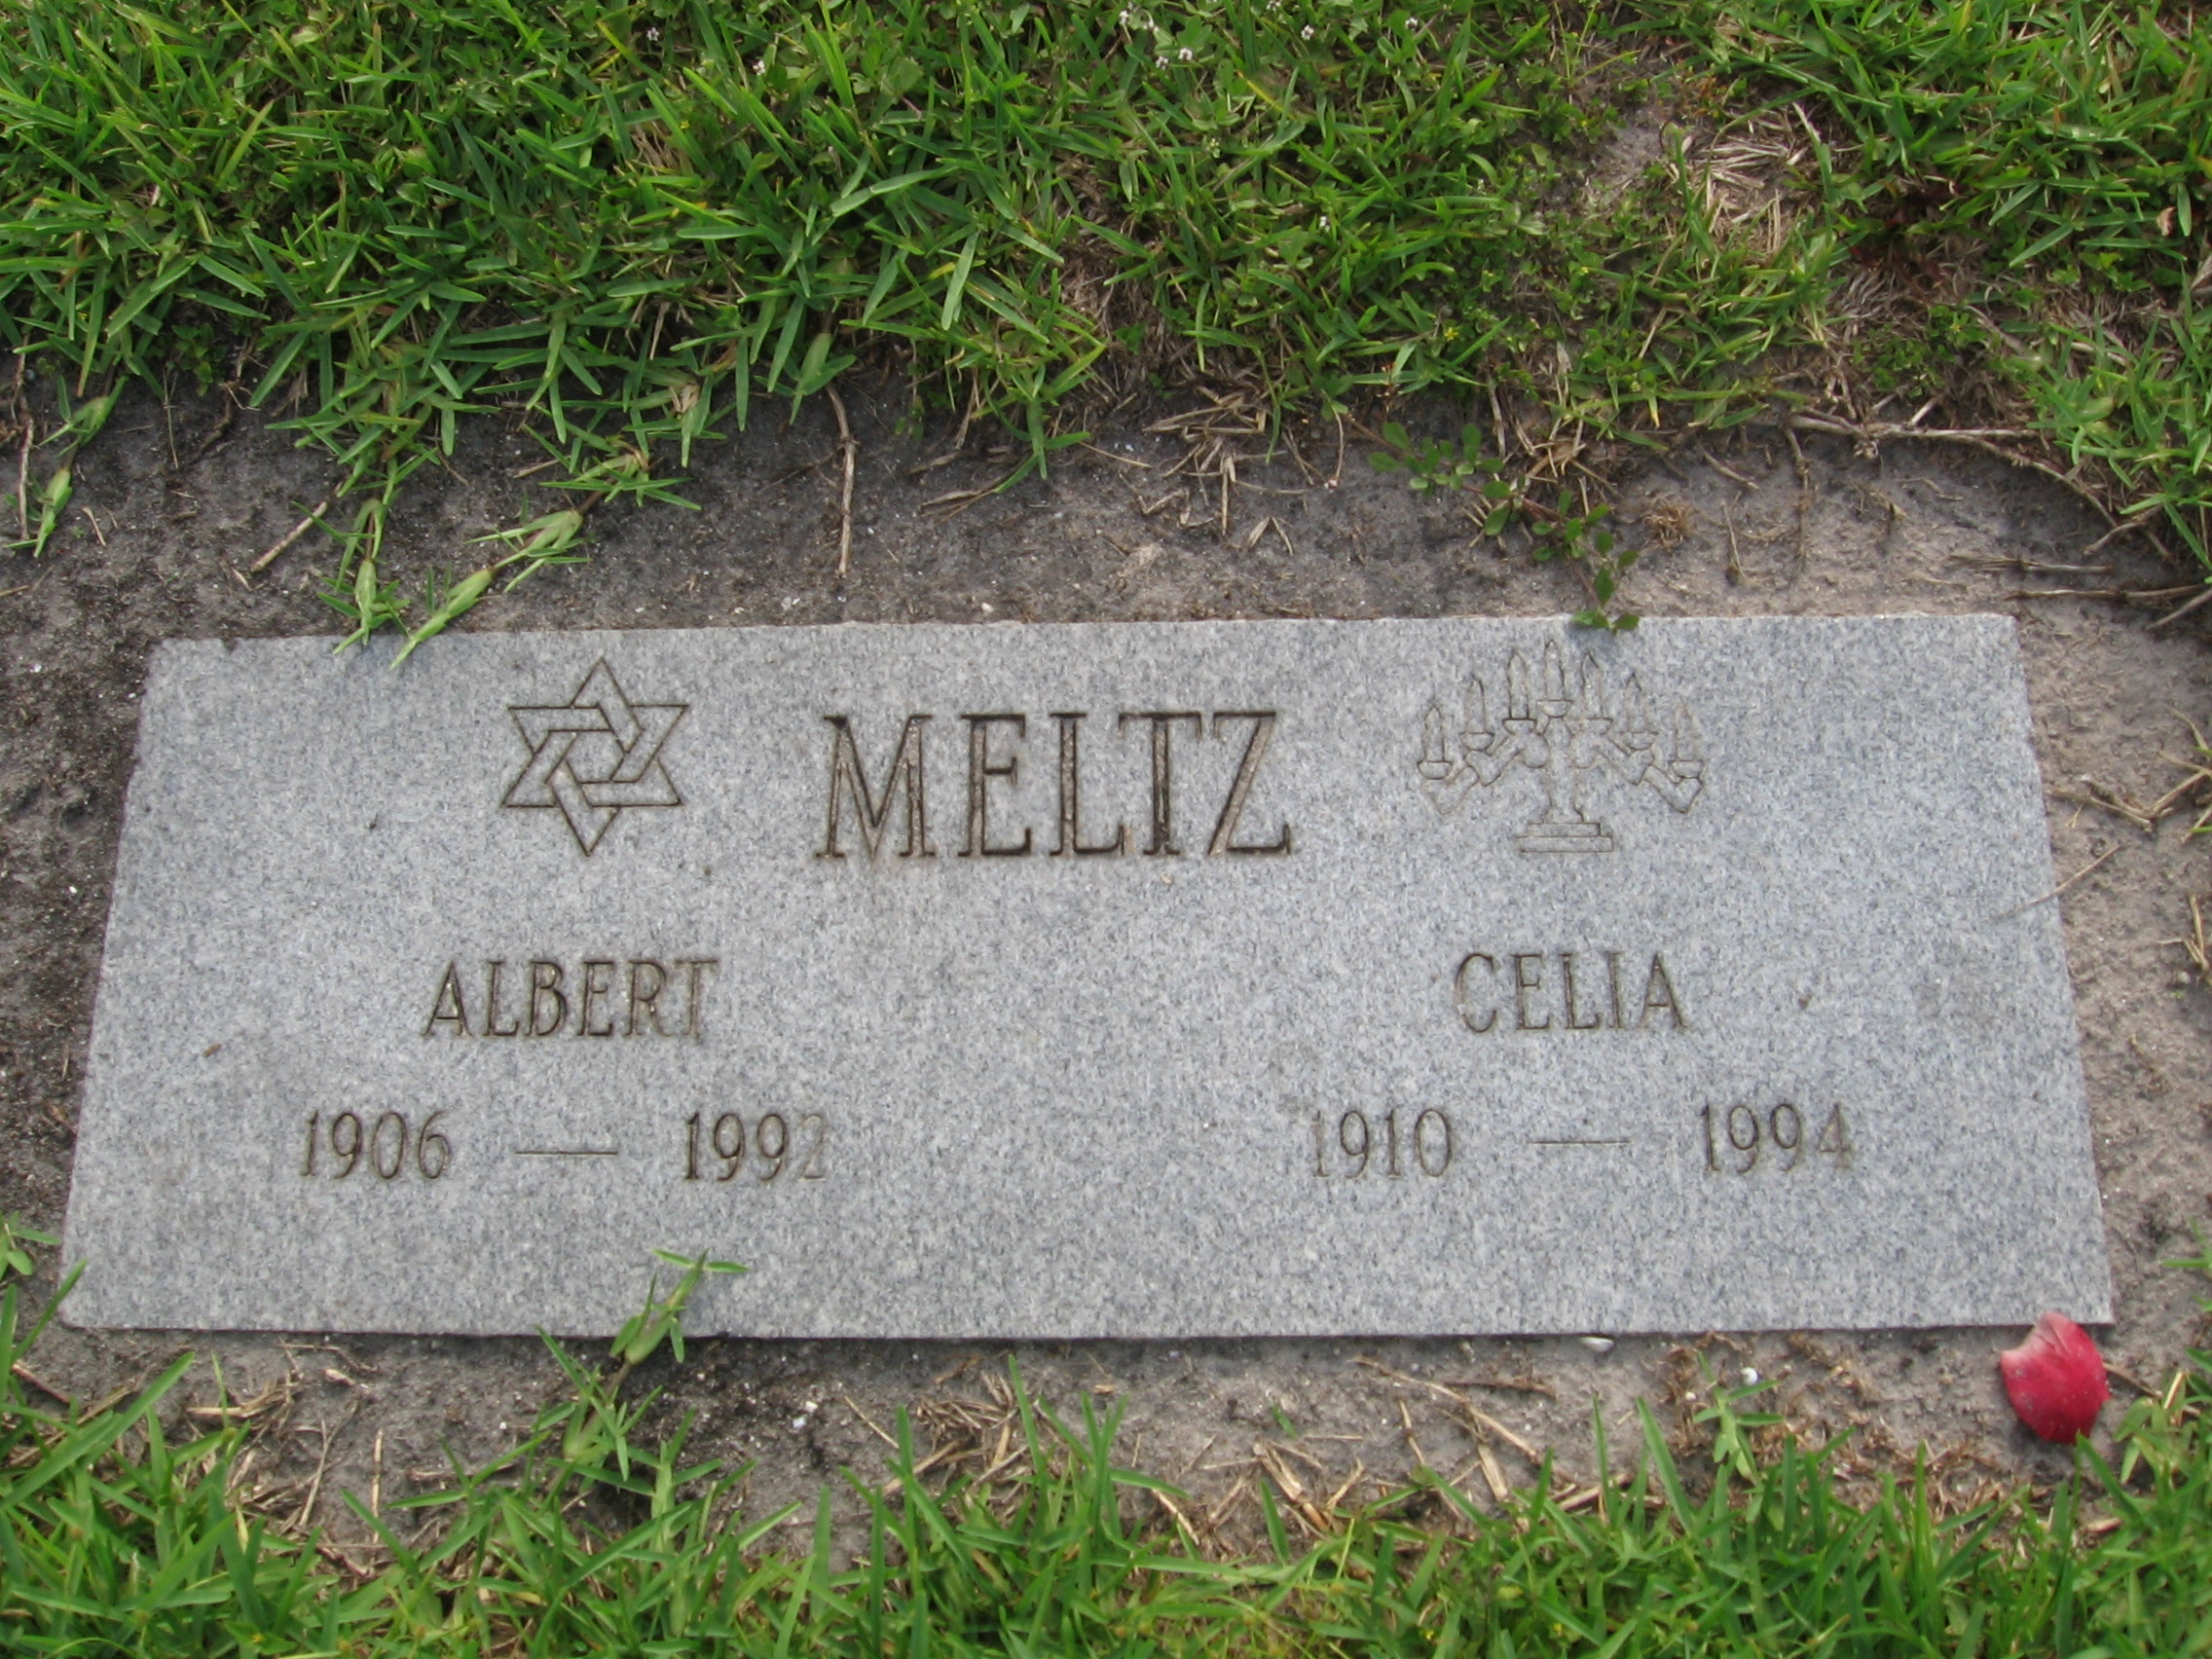 Albert Meltz